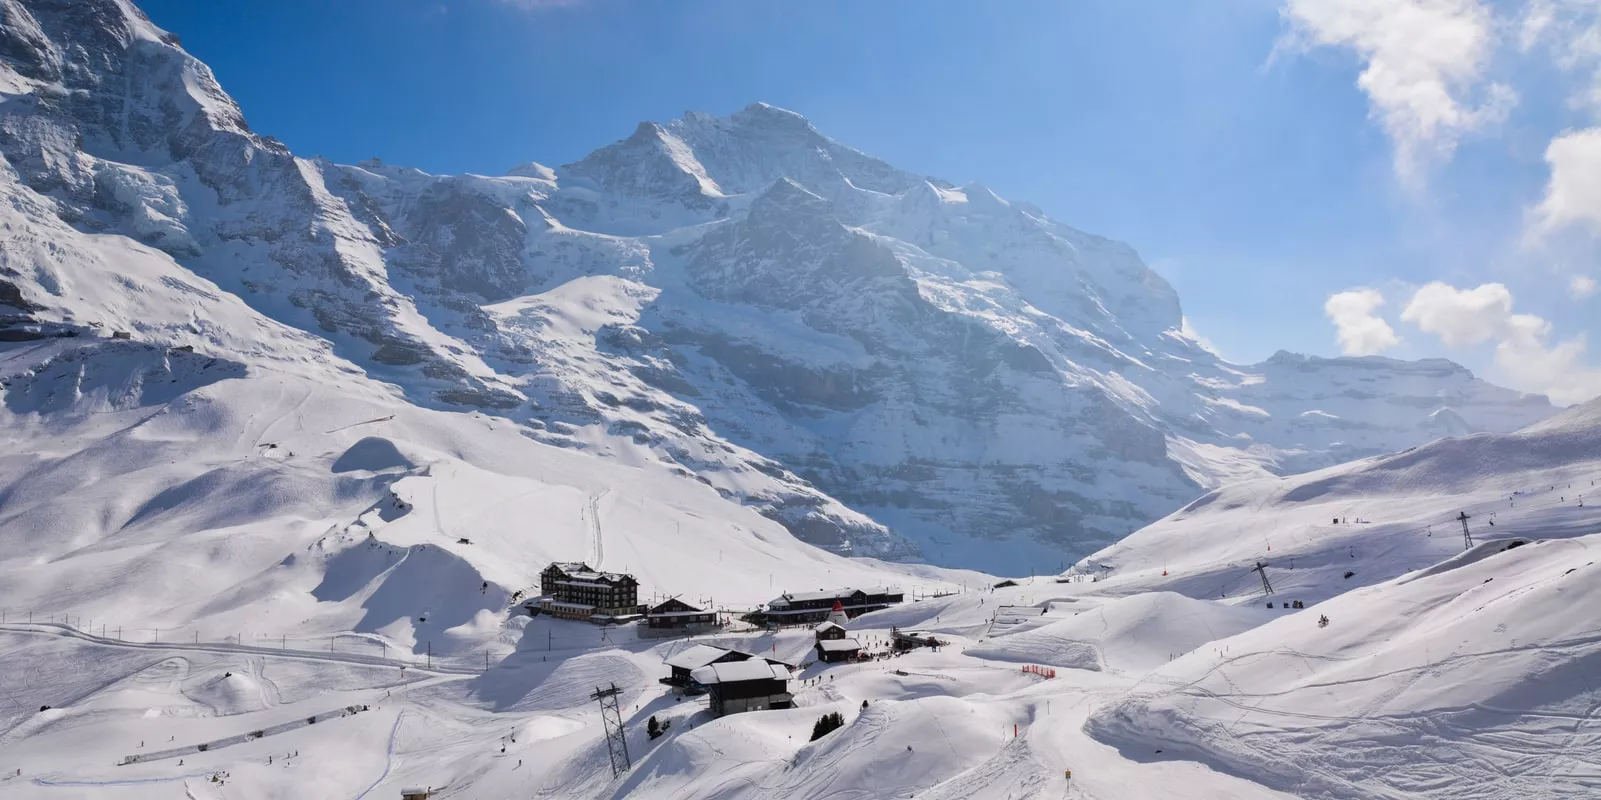 Kleine Scheidegg in Switzerland, Europe | Snowboarding,Skiing,Snowmobiling - Rated 8.1